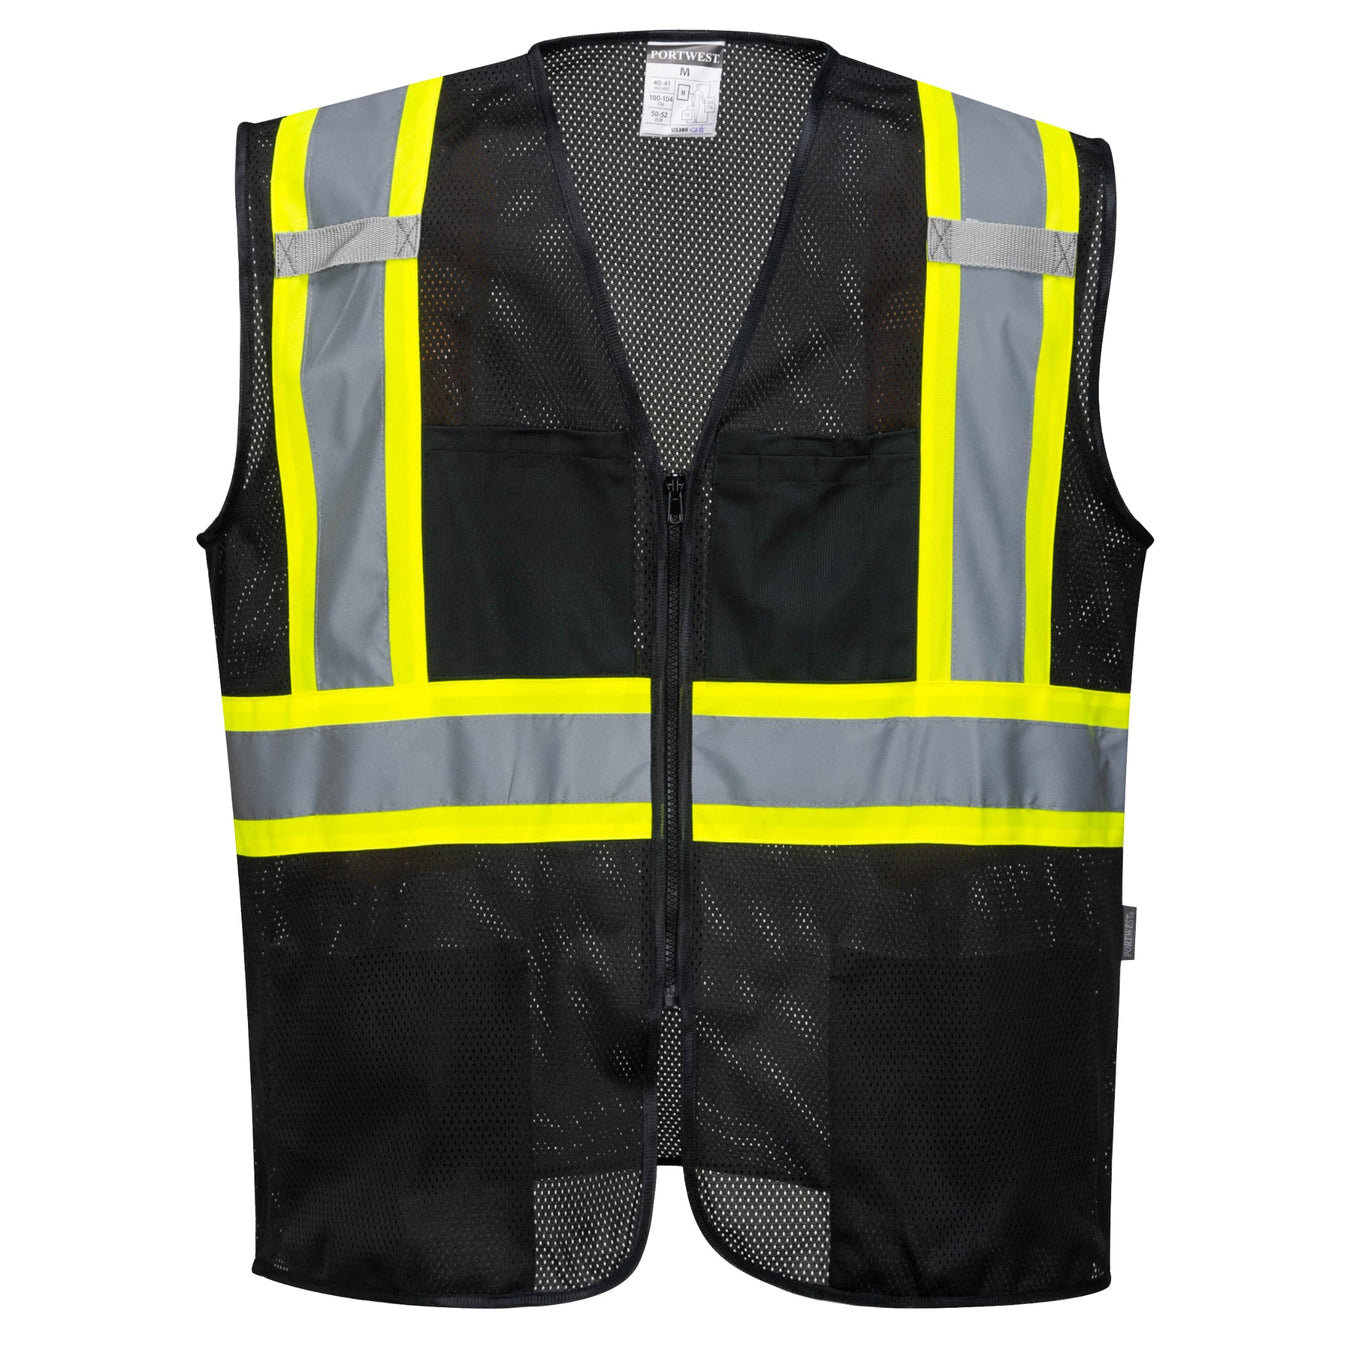 Black Safety Vests